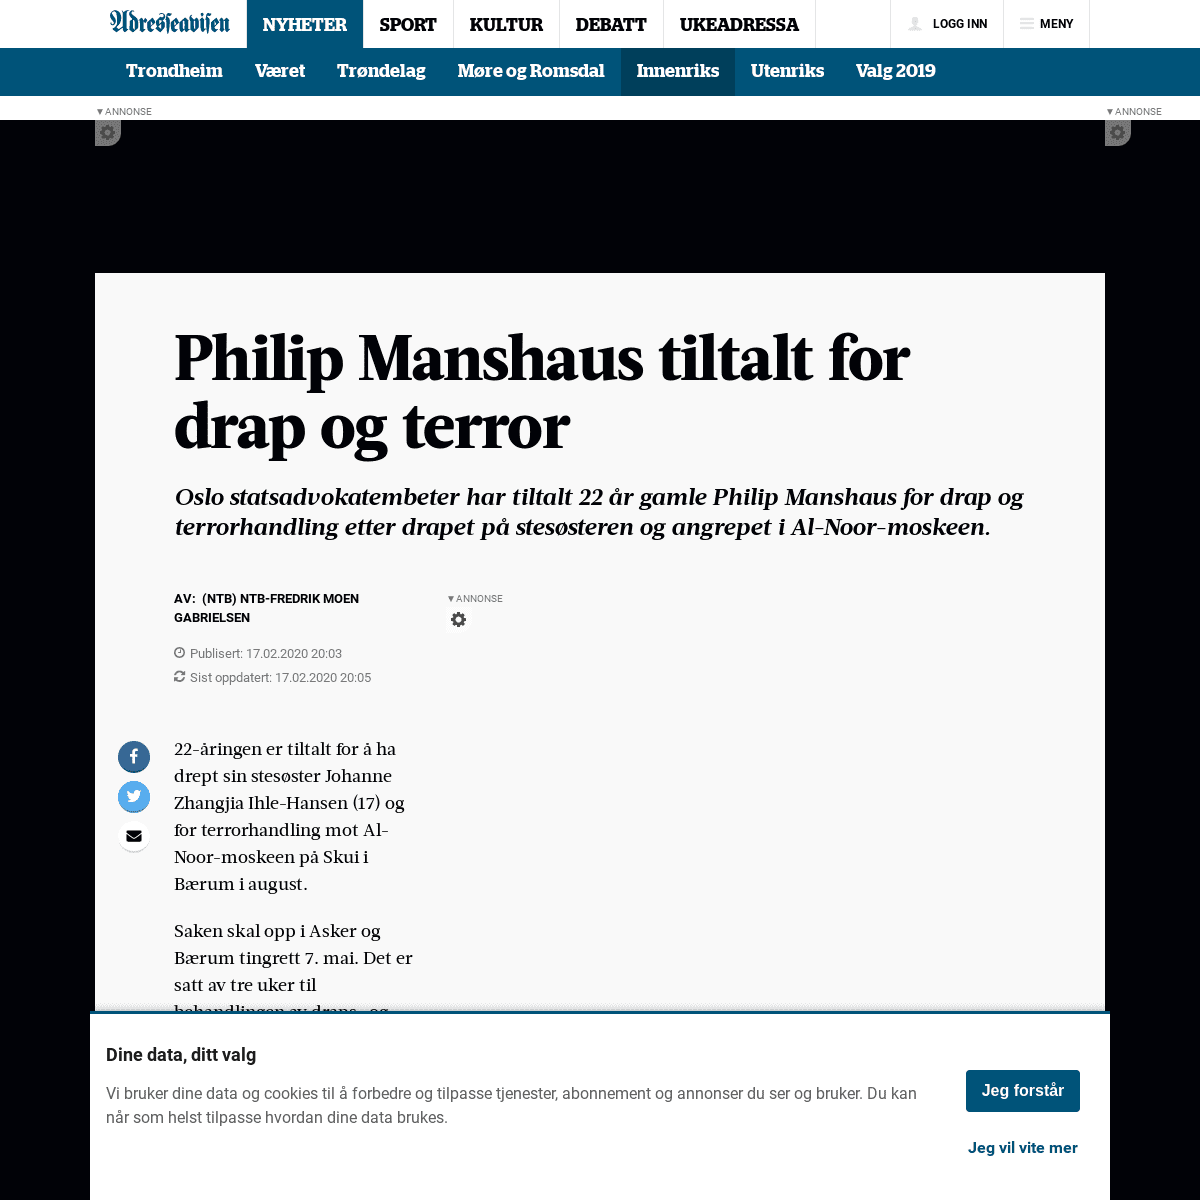 A complete backup of www.adressa.no/nyheter/innenriks/2020/02/17/Philip-Manshaus-tiltalt-for-drap-og-terror-21111750.ece